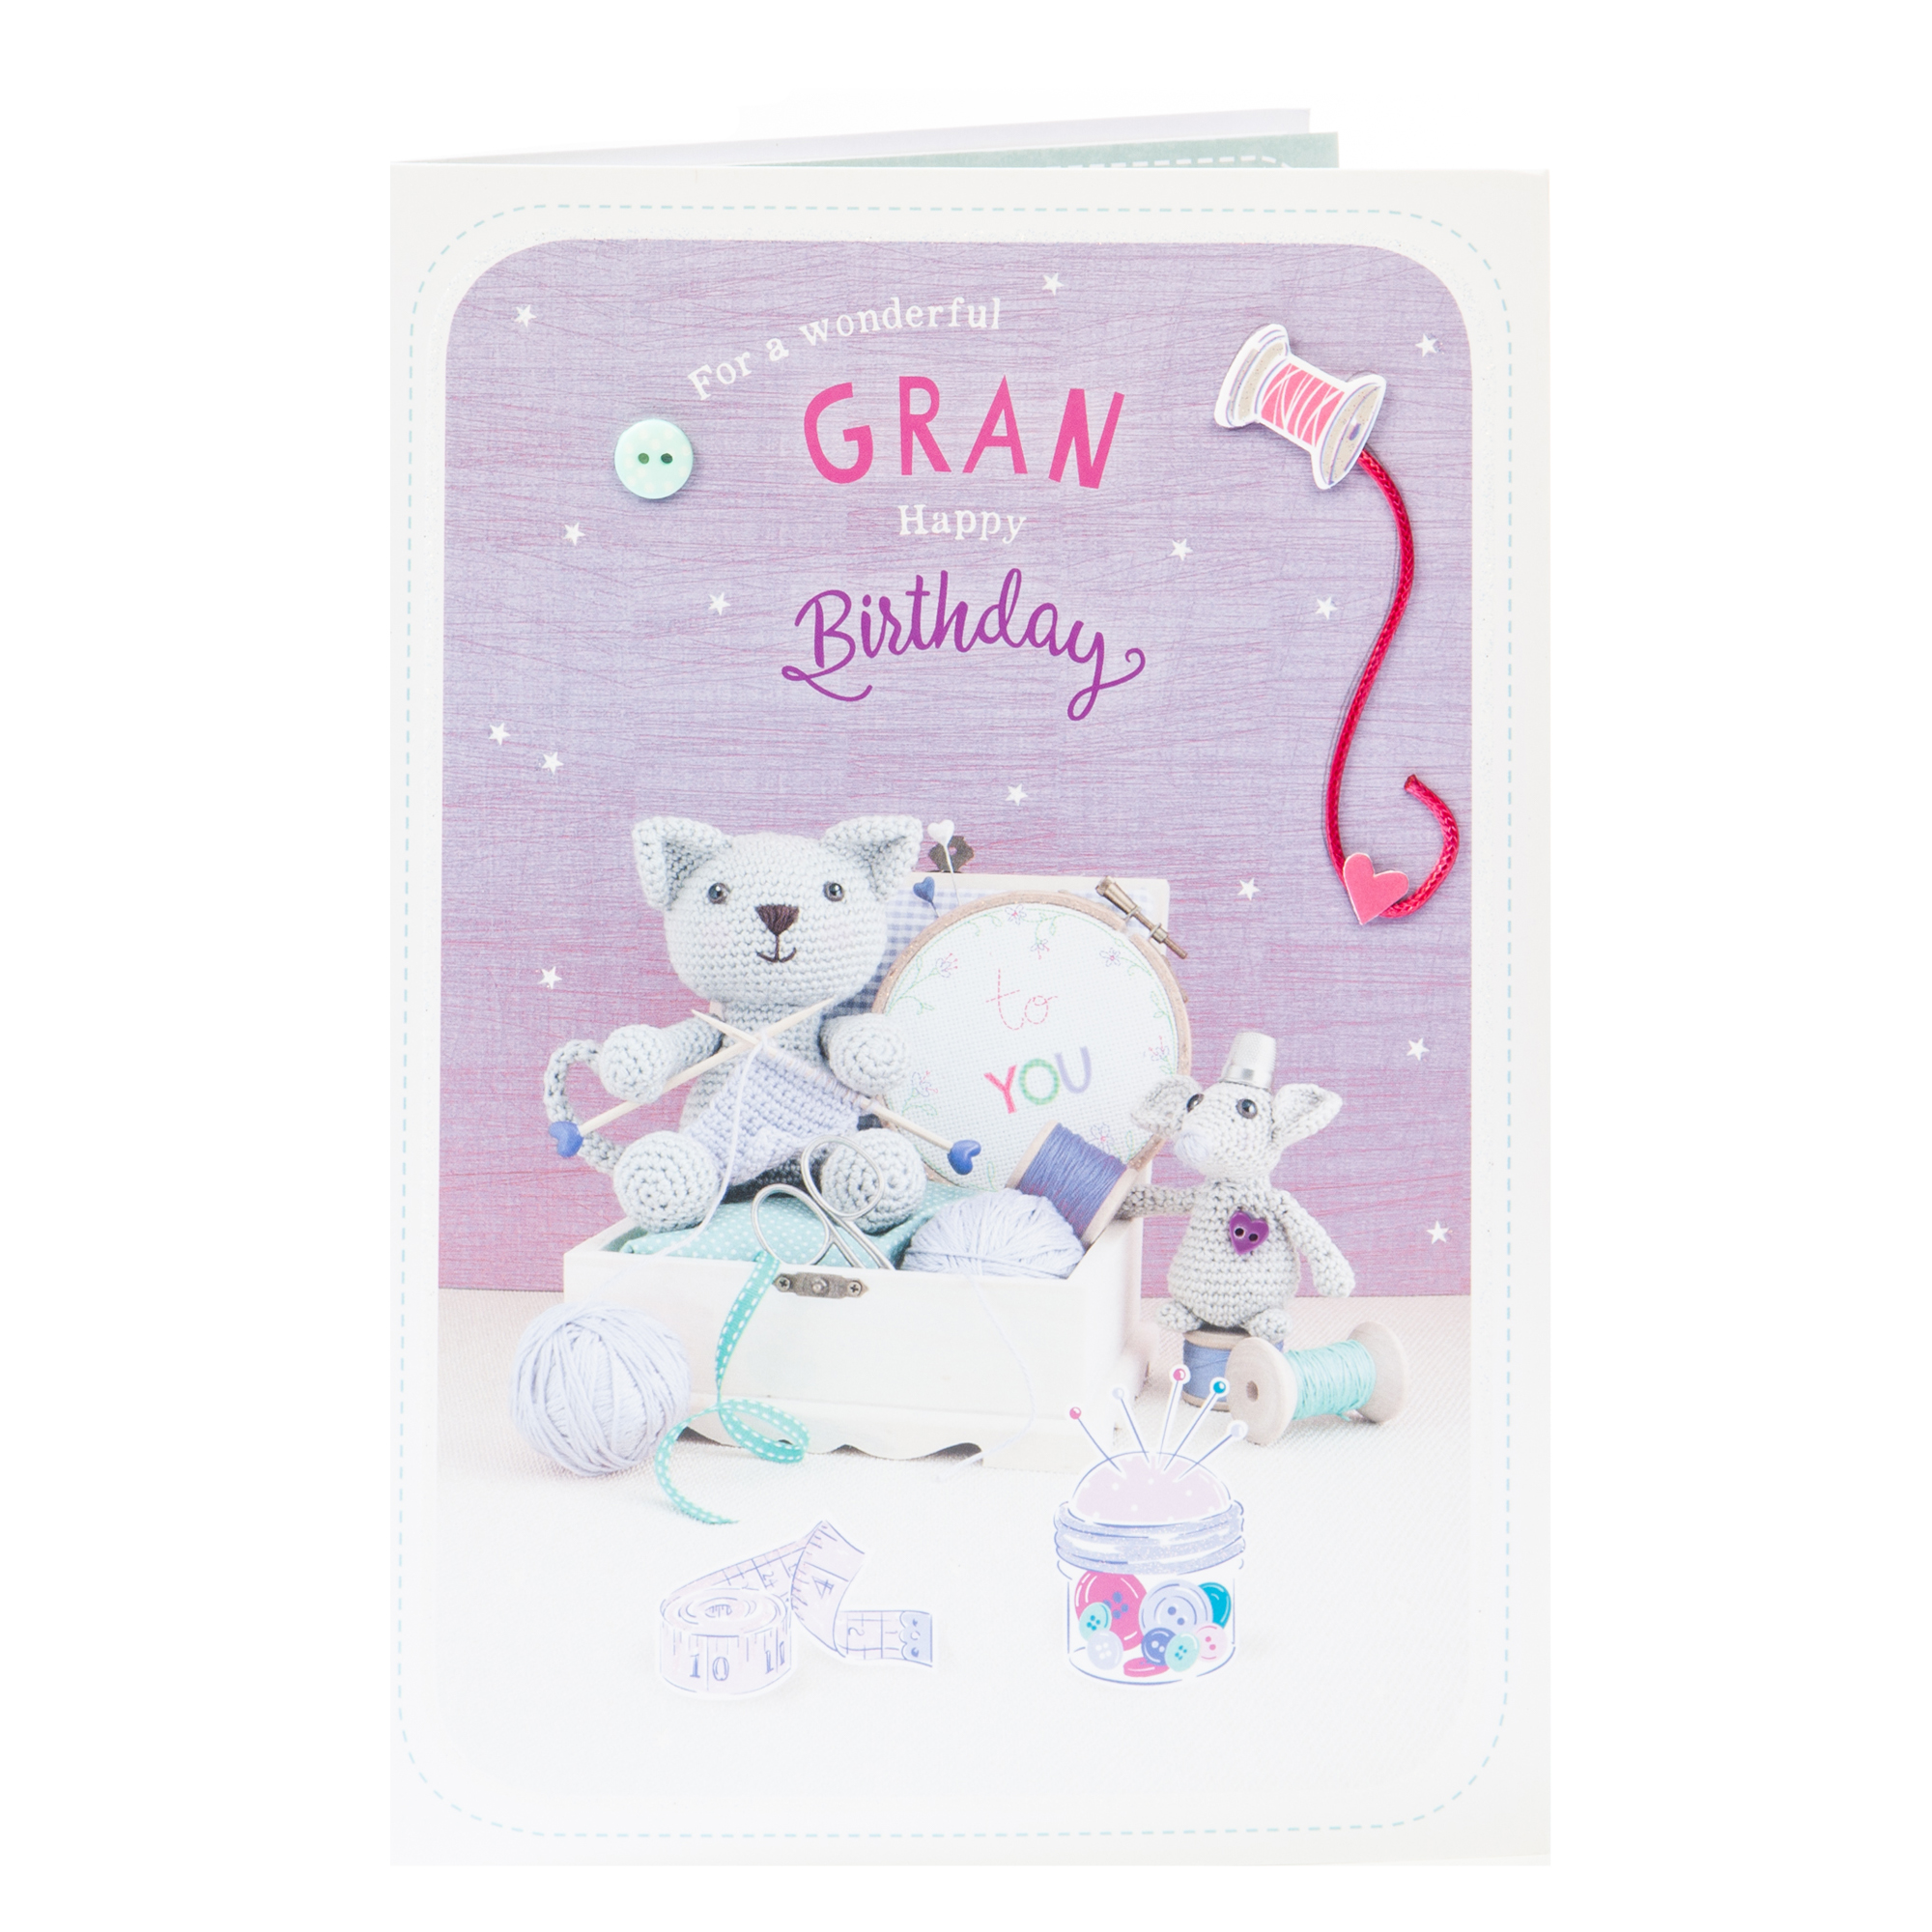 Birthday Card - For A Wonderful Gran